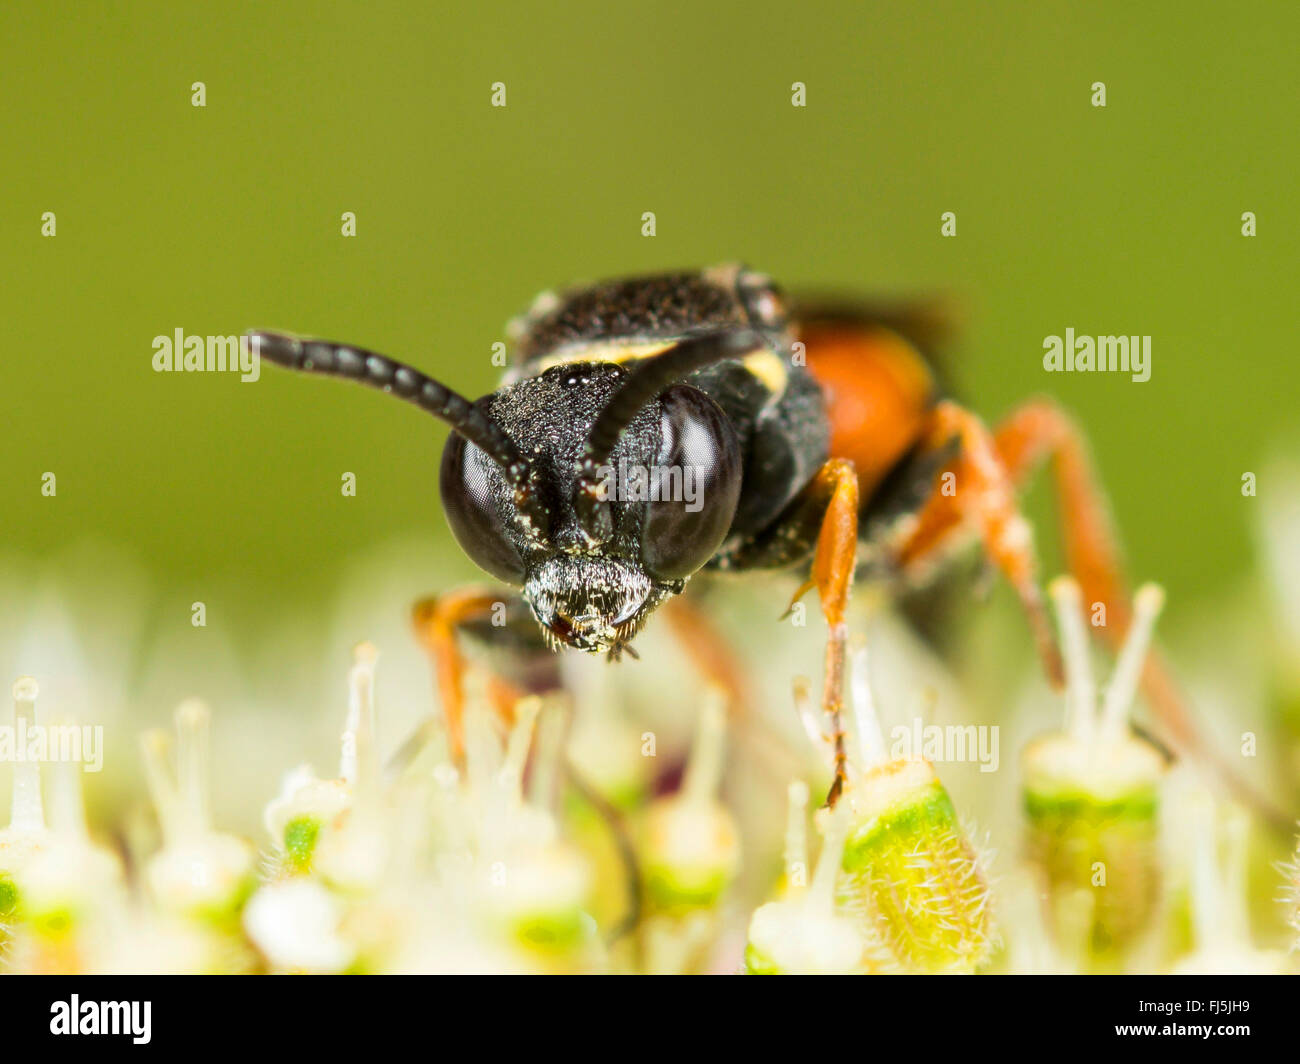 Digger wasp (Nysson maculosus), femme qui se nourrissent de la Carotte sauvage (Daucus carota), Allemagne Banque D'Images